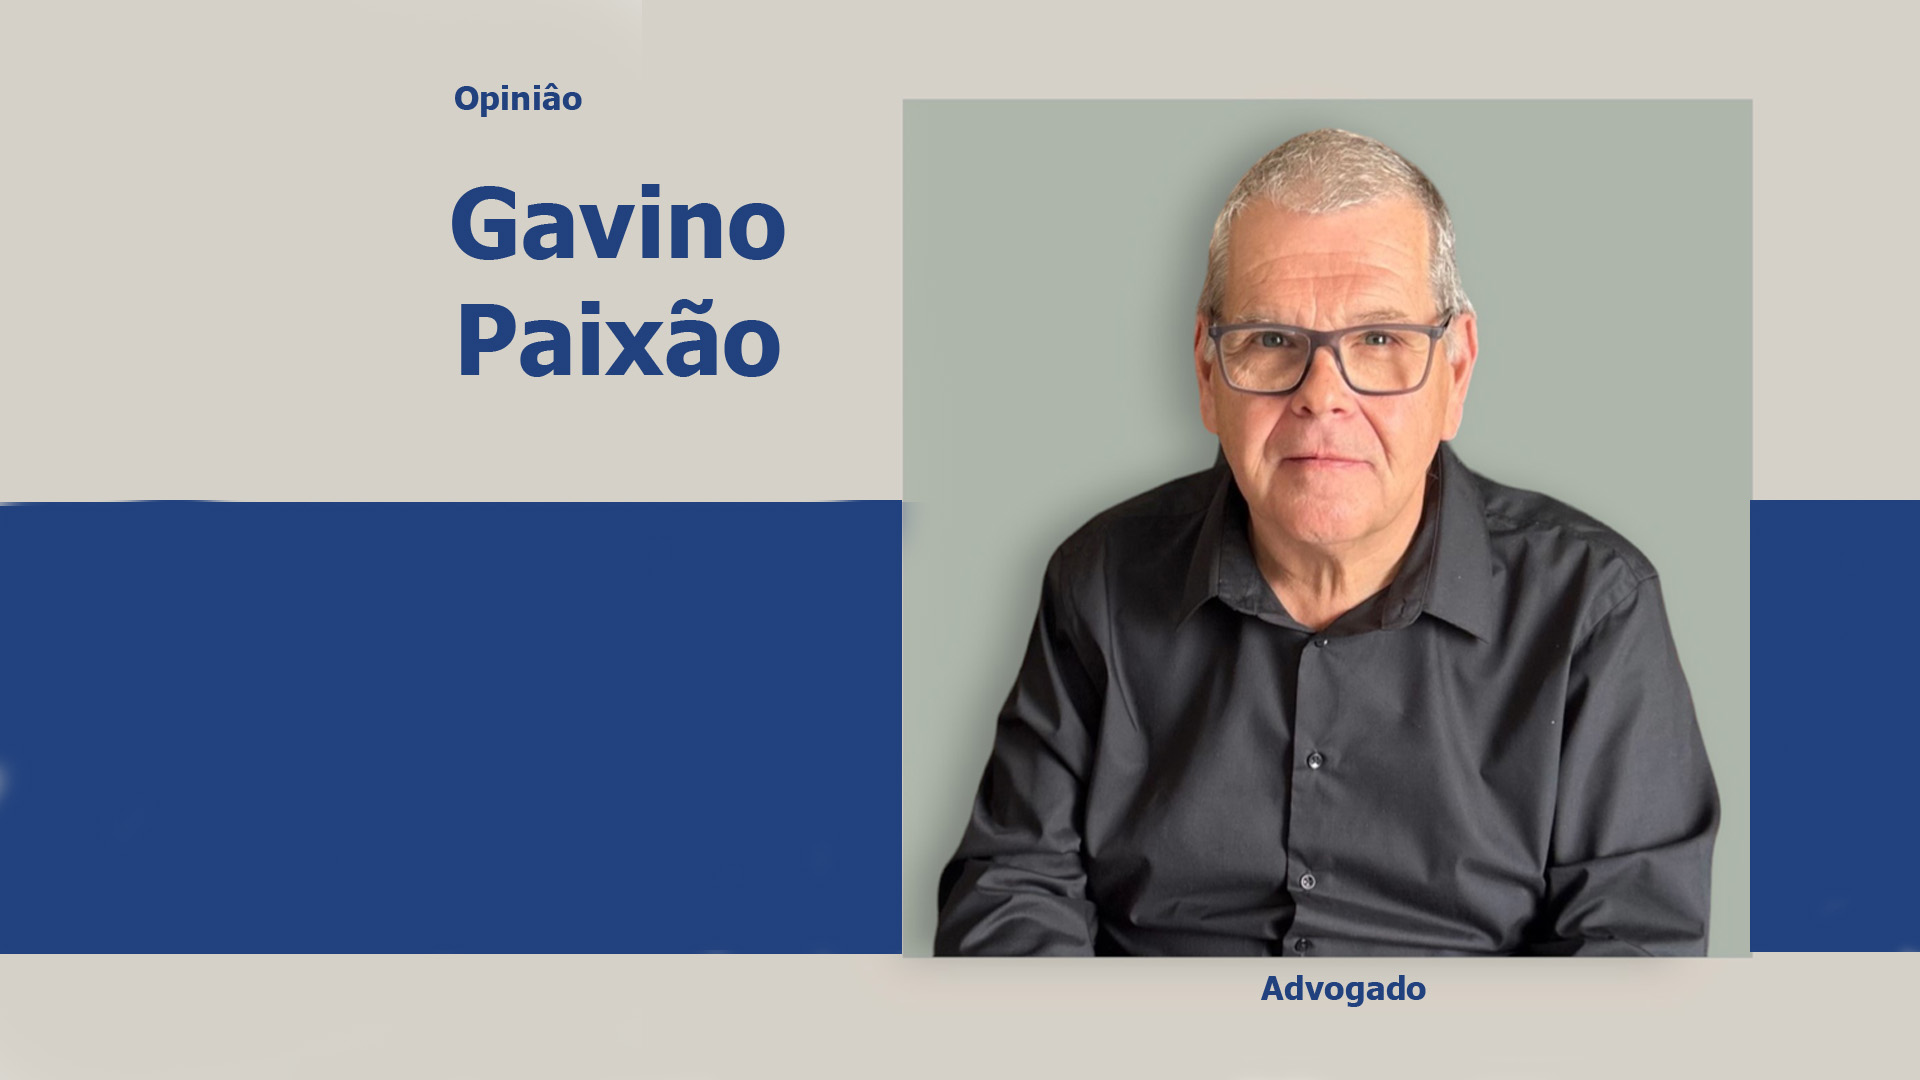 Gavino Paixão